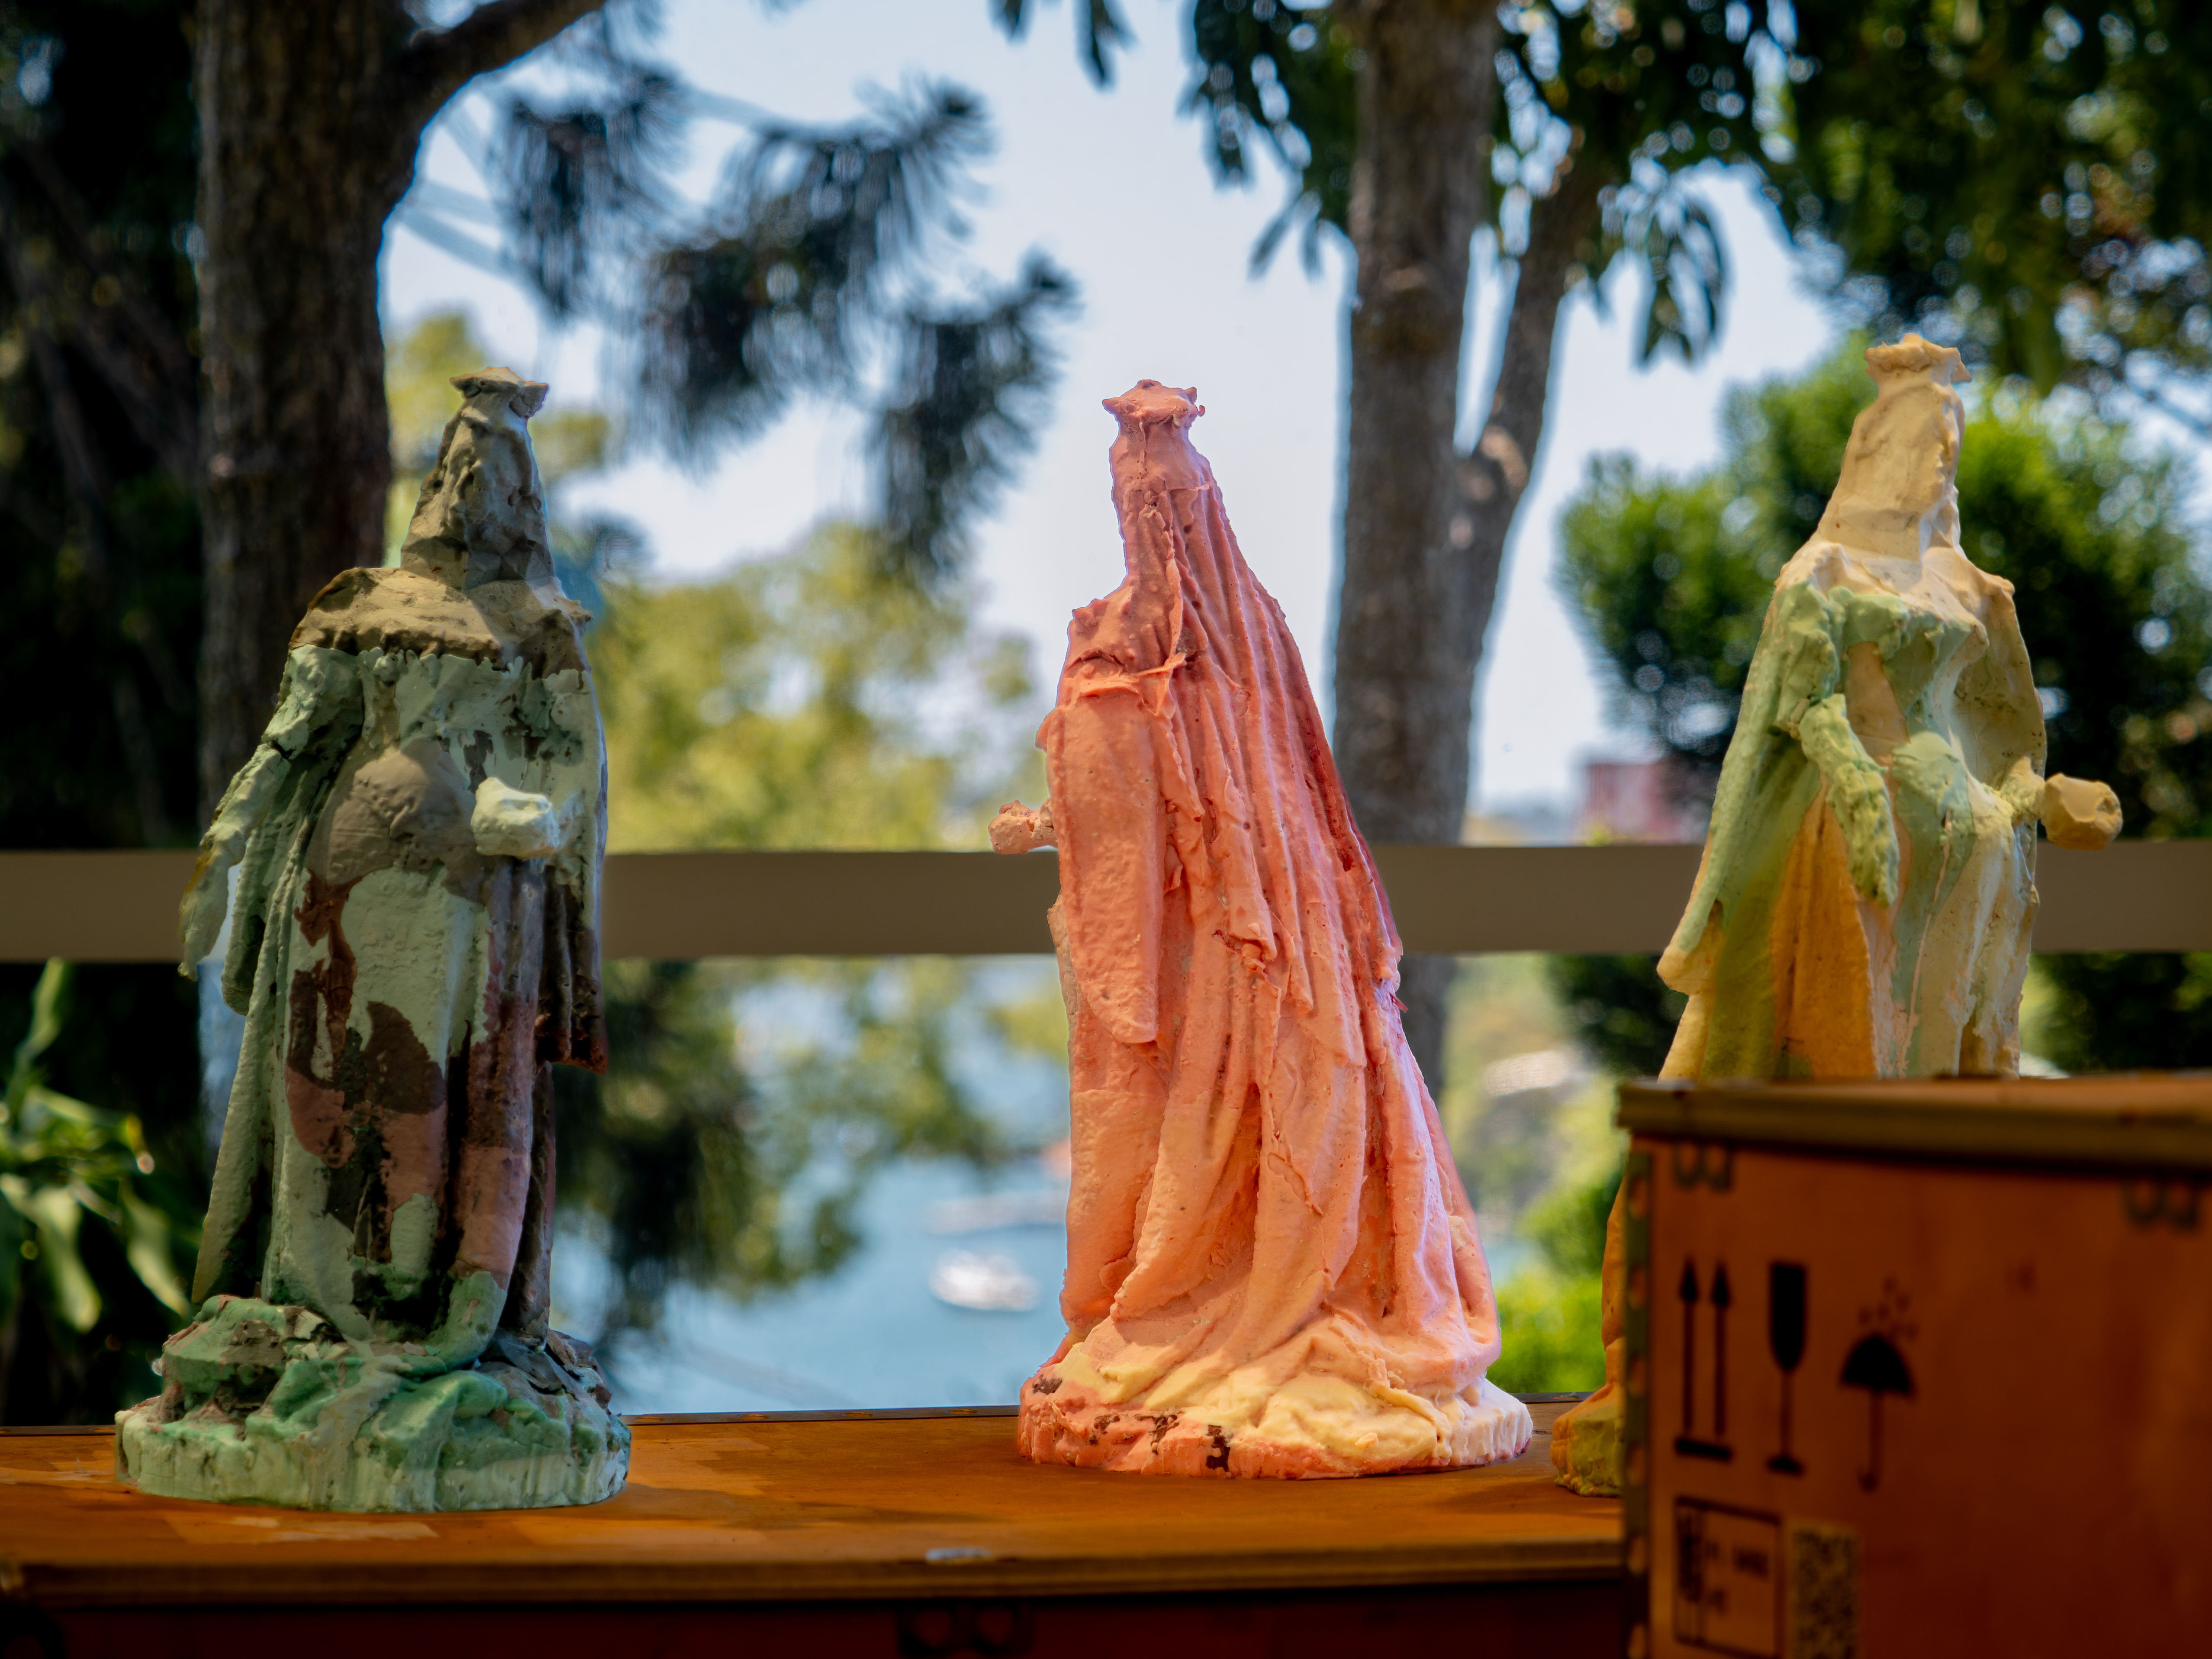 Three wax sculptures of Queen Victoria set against a garden background